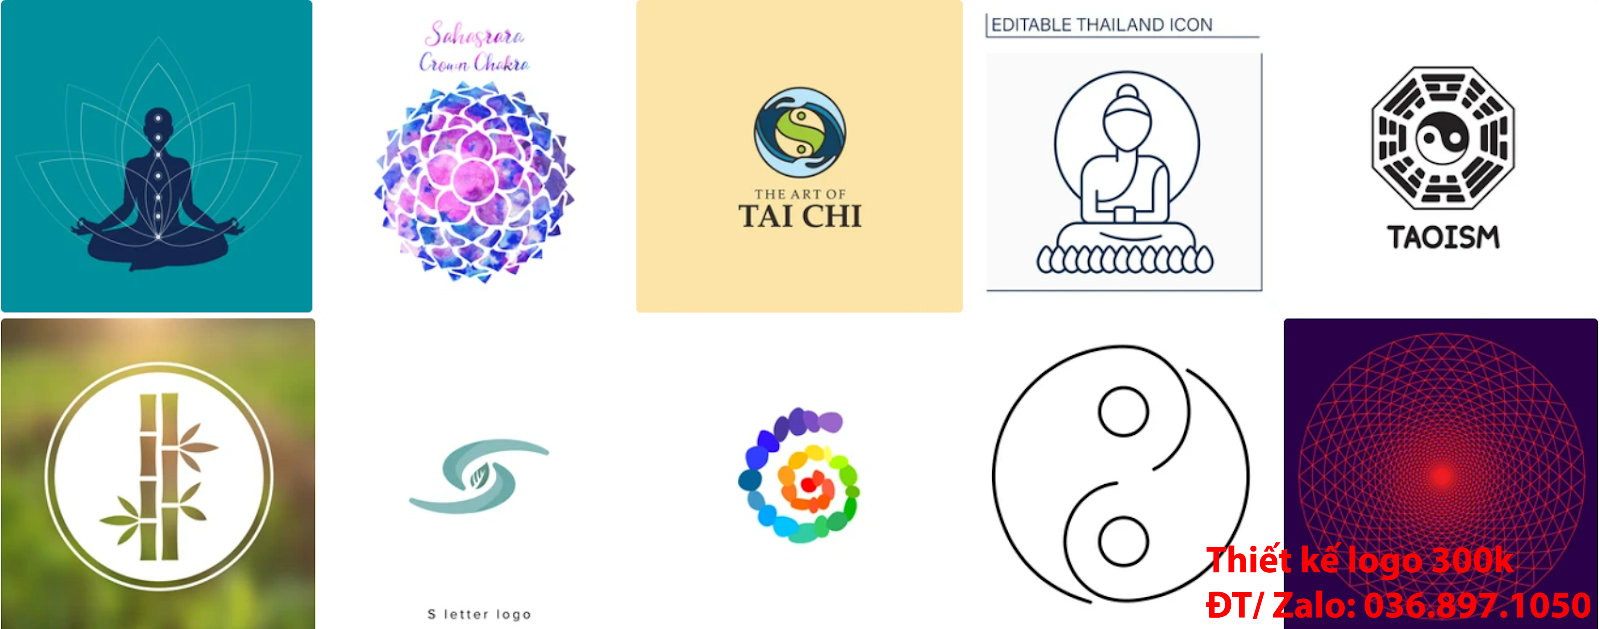 Công ty cung cấp mẫu thiết kế logo phật giáo đẹp nhất hiện nay online chuyên nghiệp